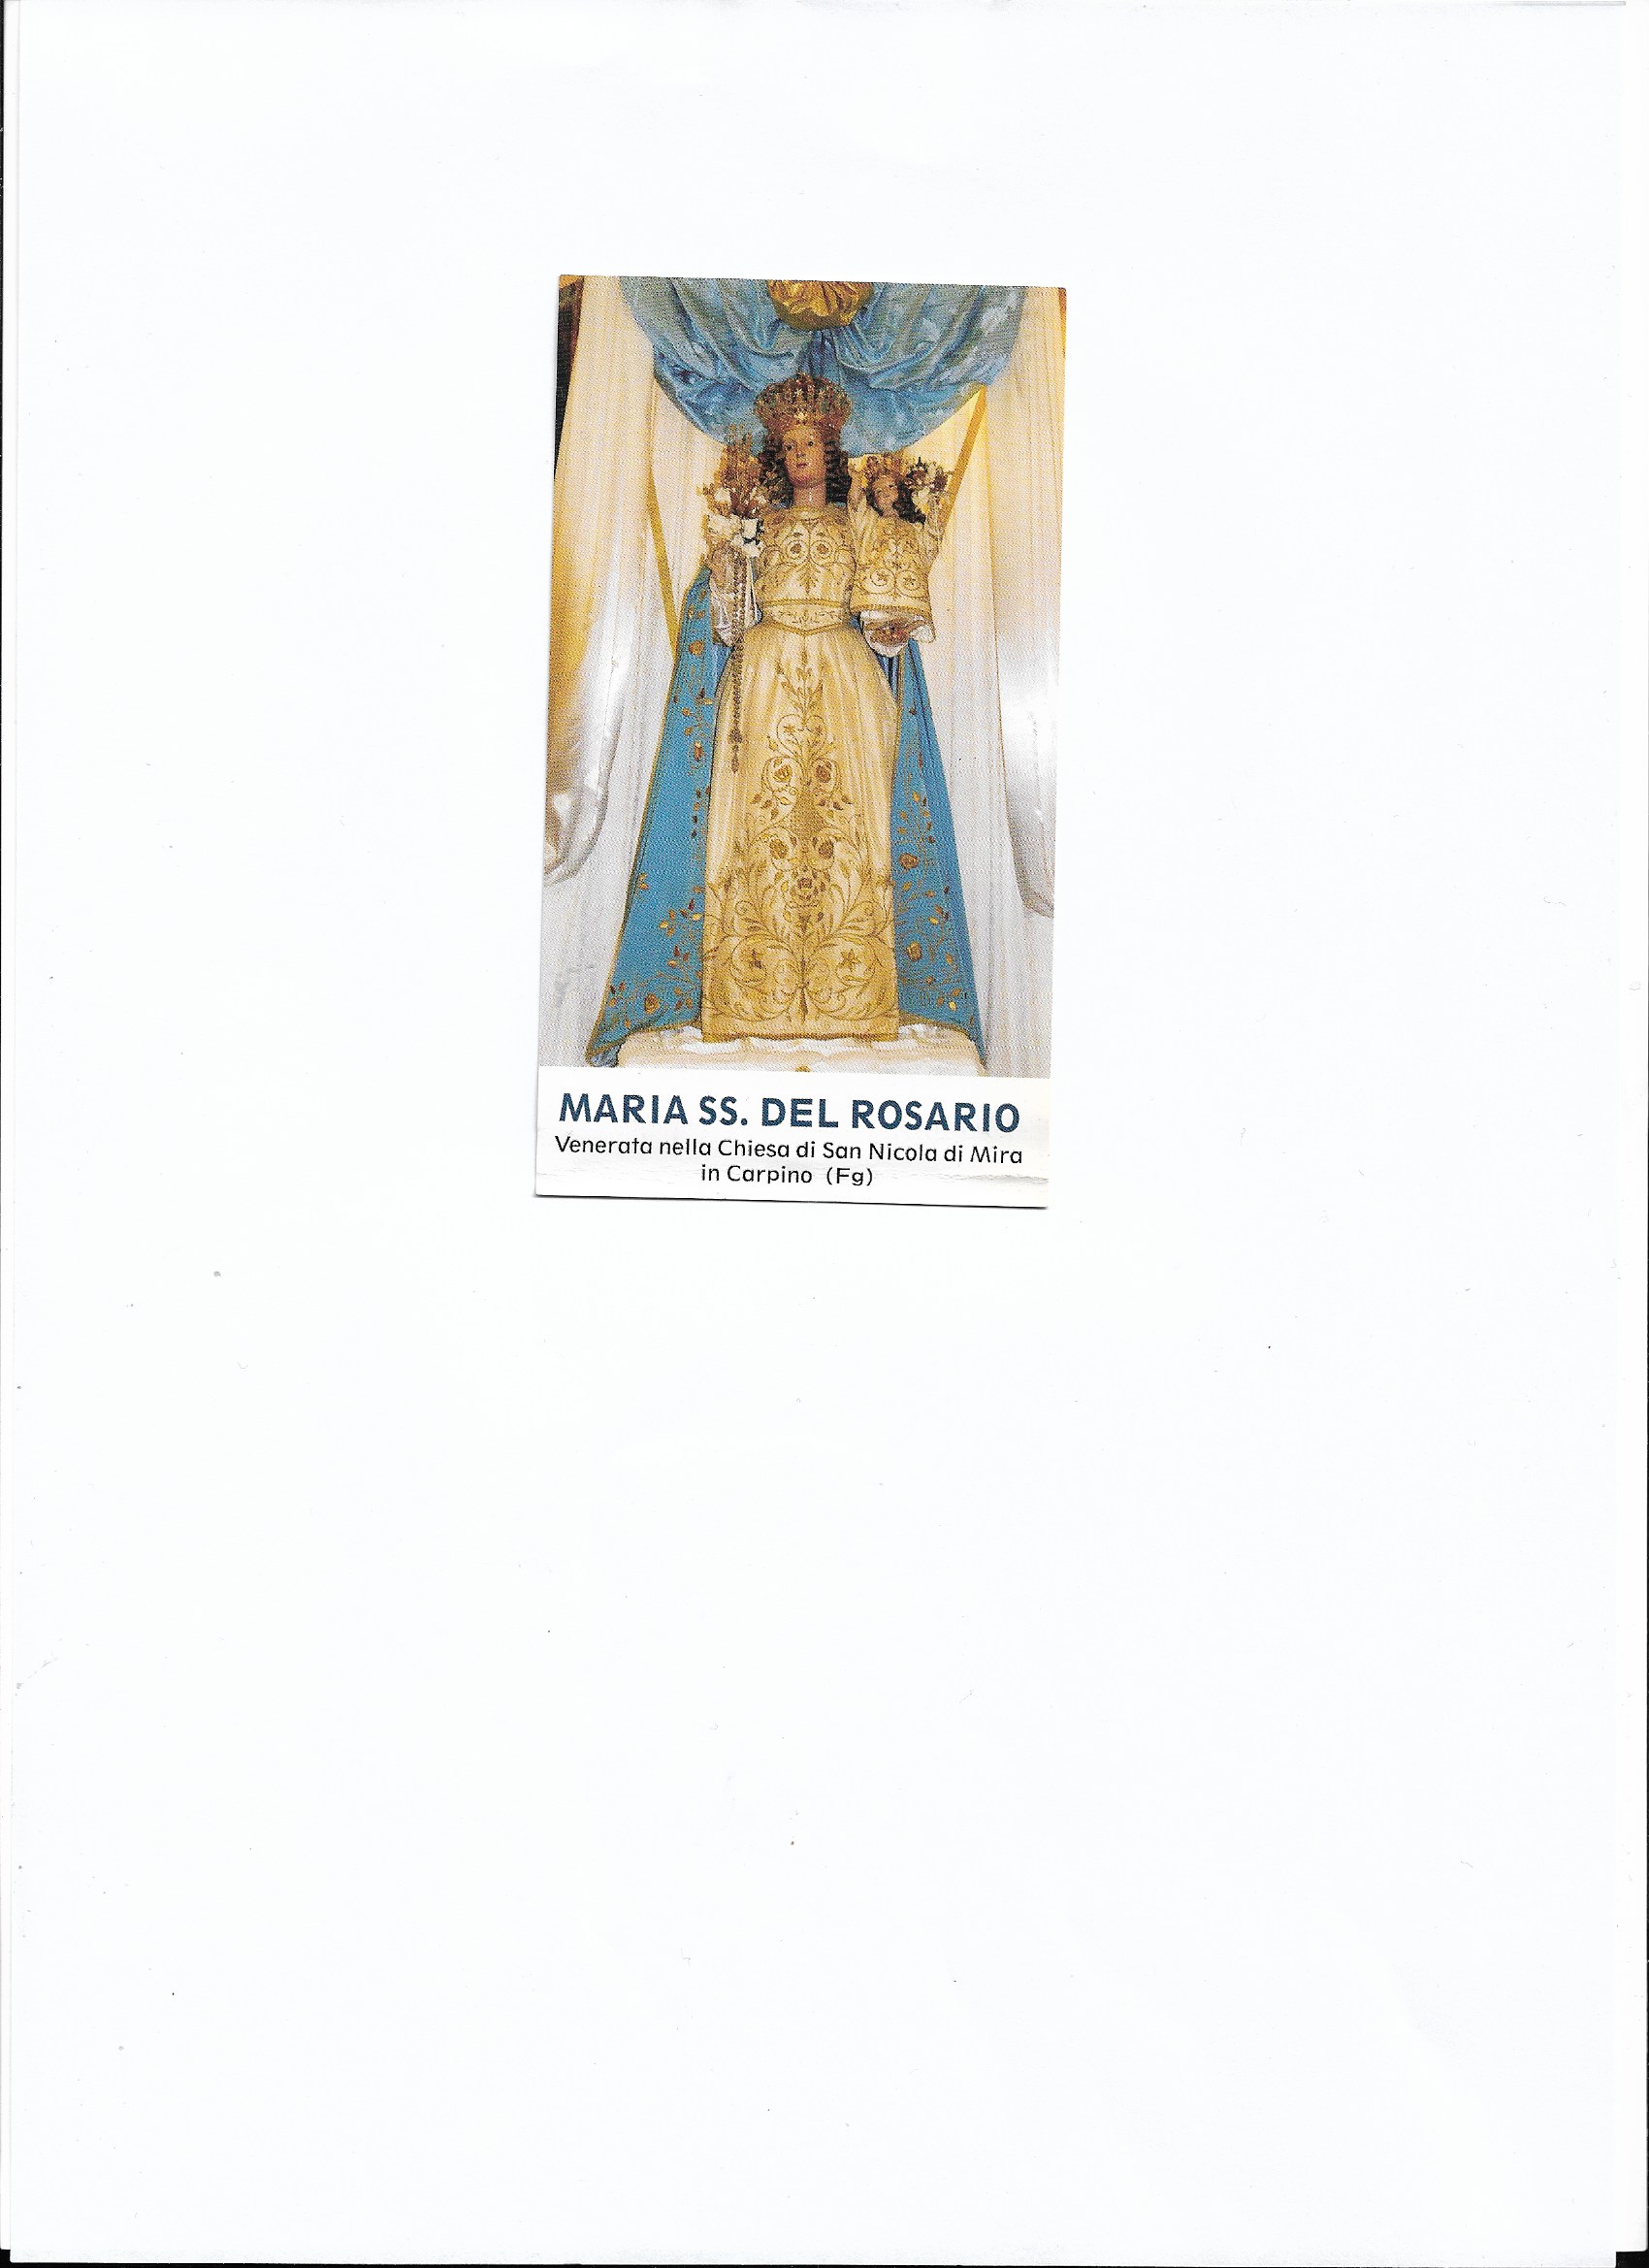 Statua della Madonna decapitata e orecchini rubati: il parroco chiude per  furto la chiesa